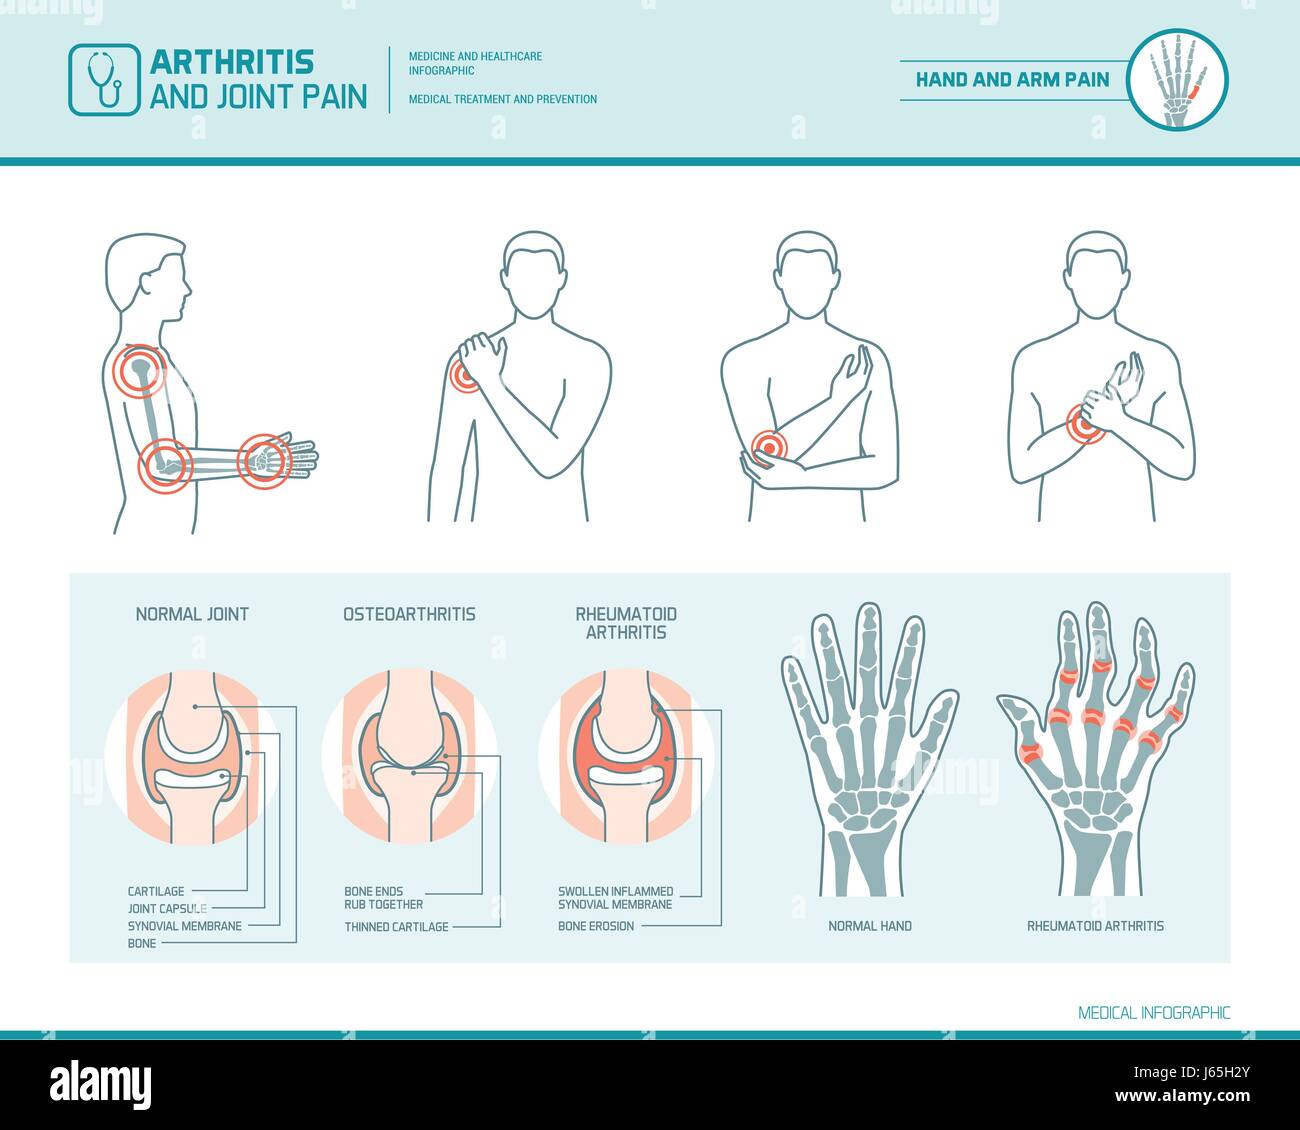 L'arthrite et la douleur commune infographie, illustration anatomique d'une main et le bras inflammées Illustration de Vecteur